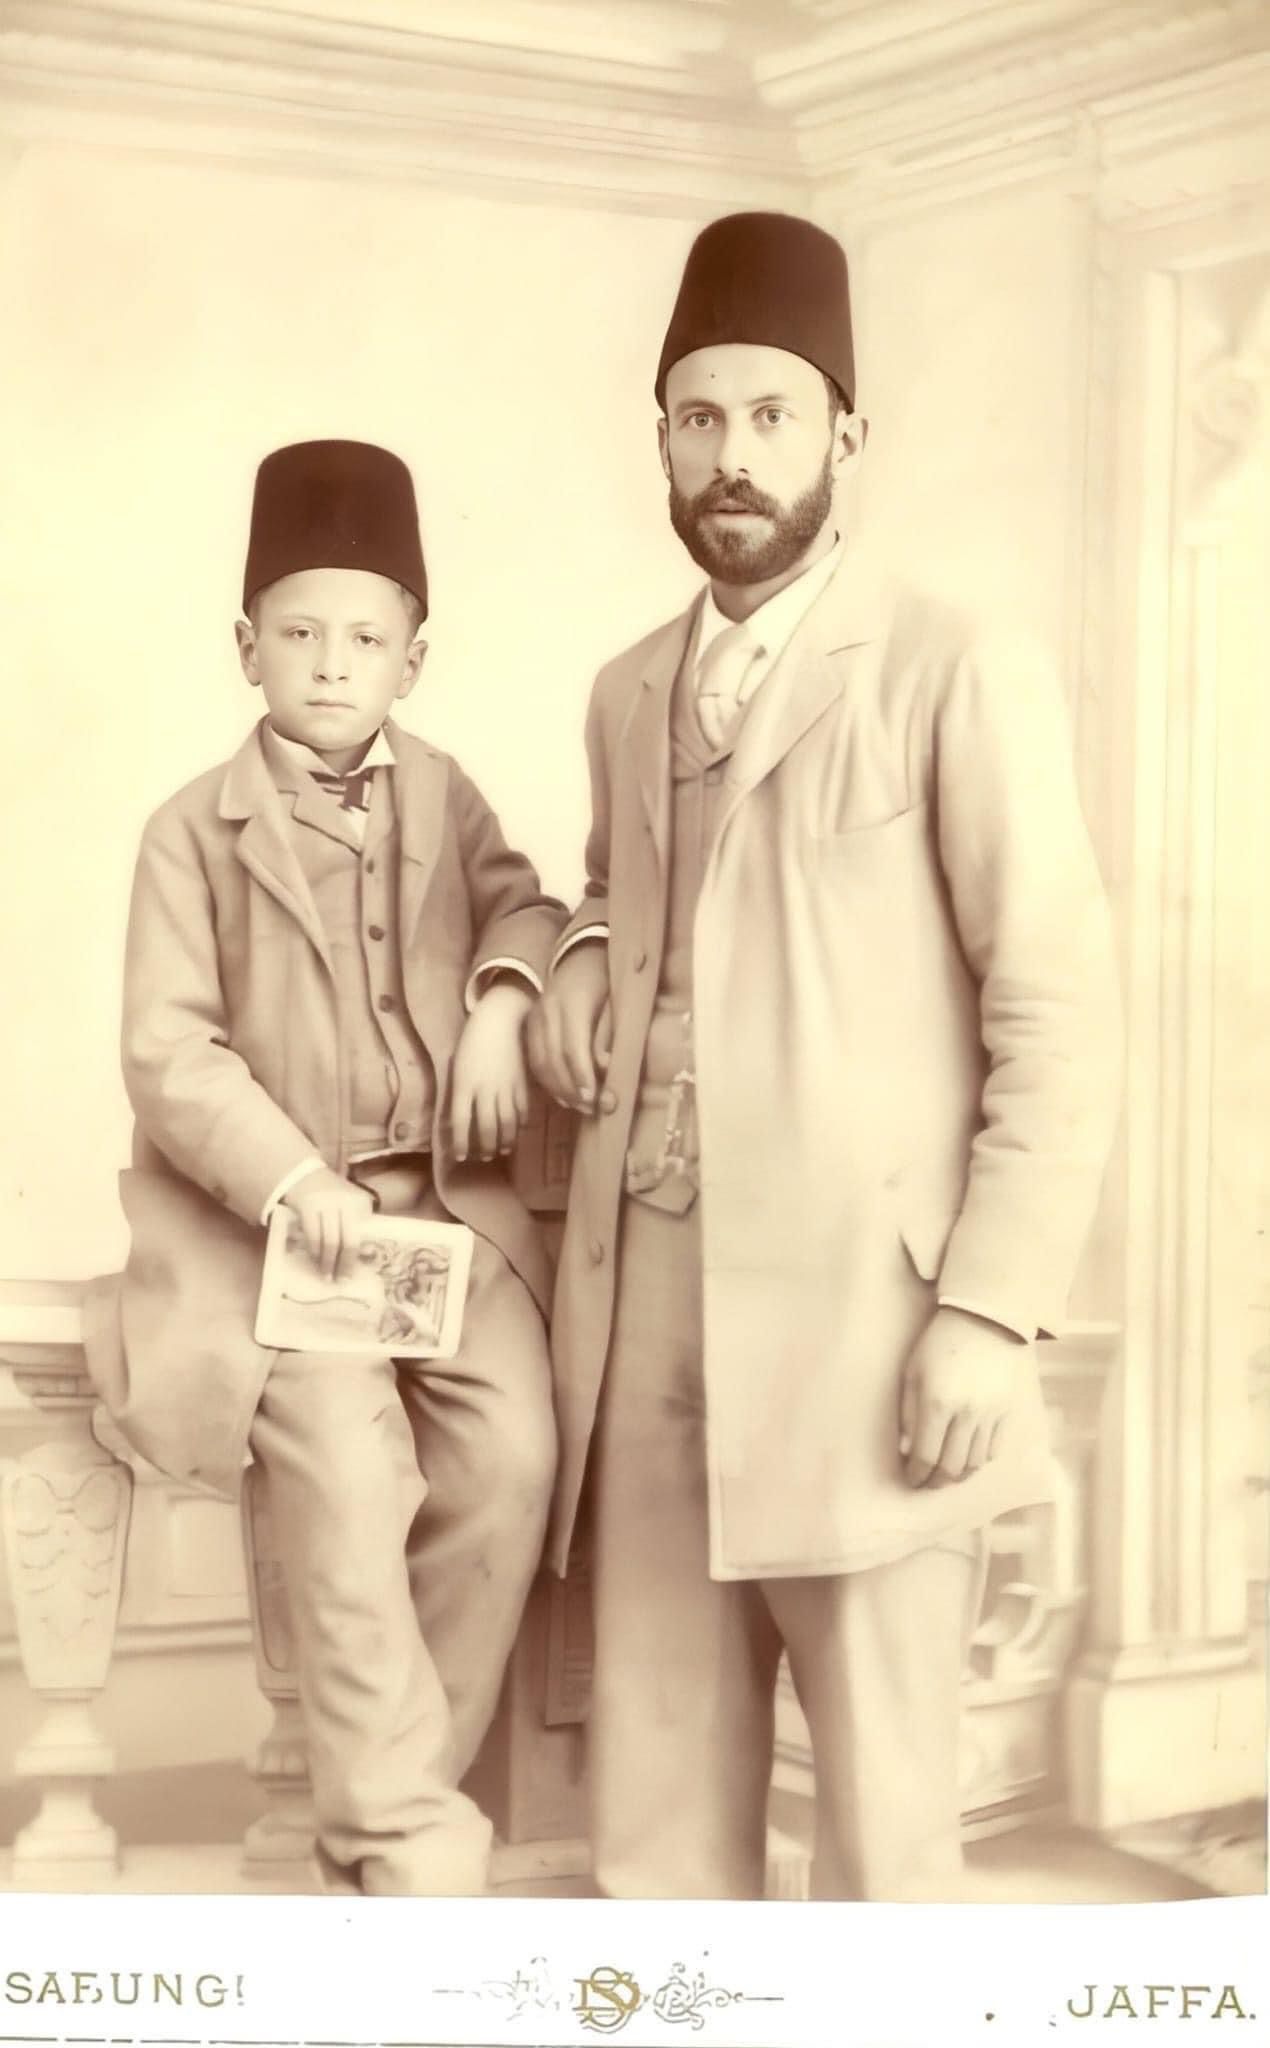 صورة نادرة للخطاط عبد القادر الشهابي مع والده في يافا عام 1893